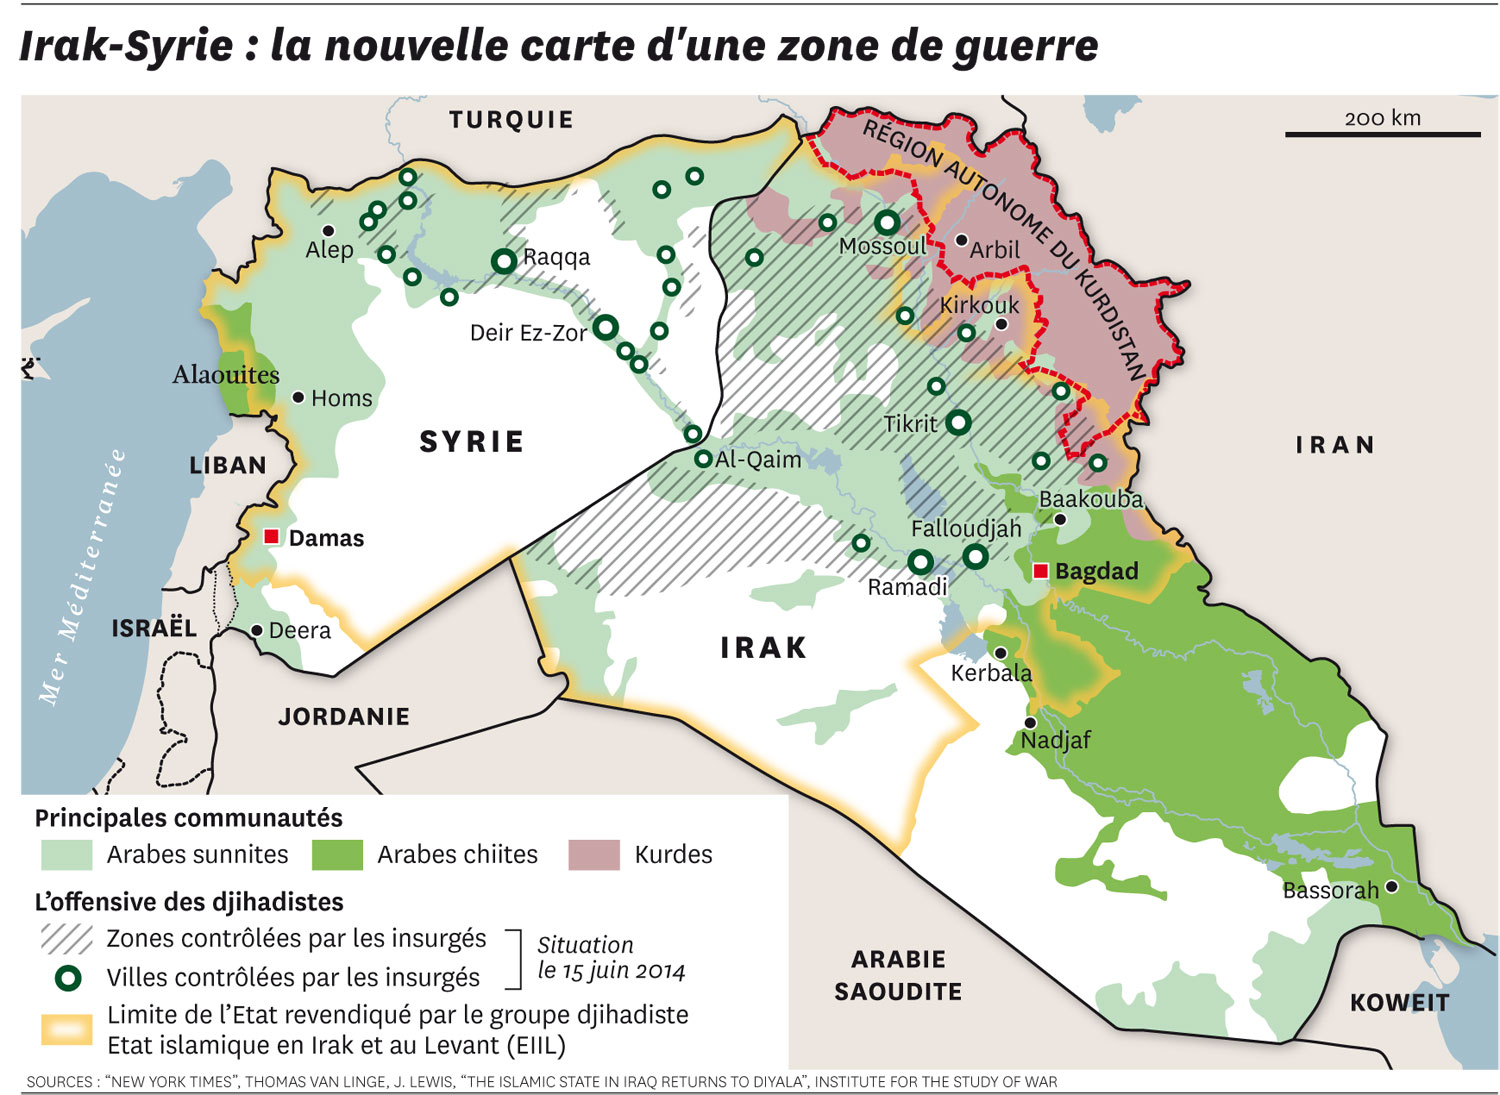 Résultats de recherche d'images pour « syrie irak map »